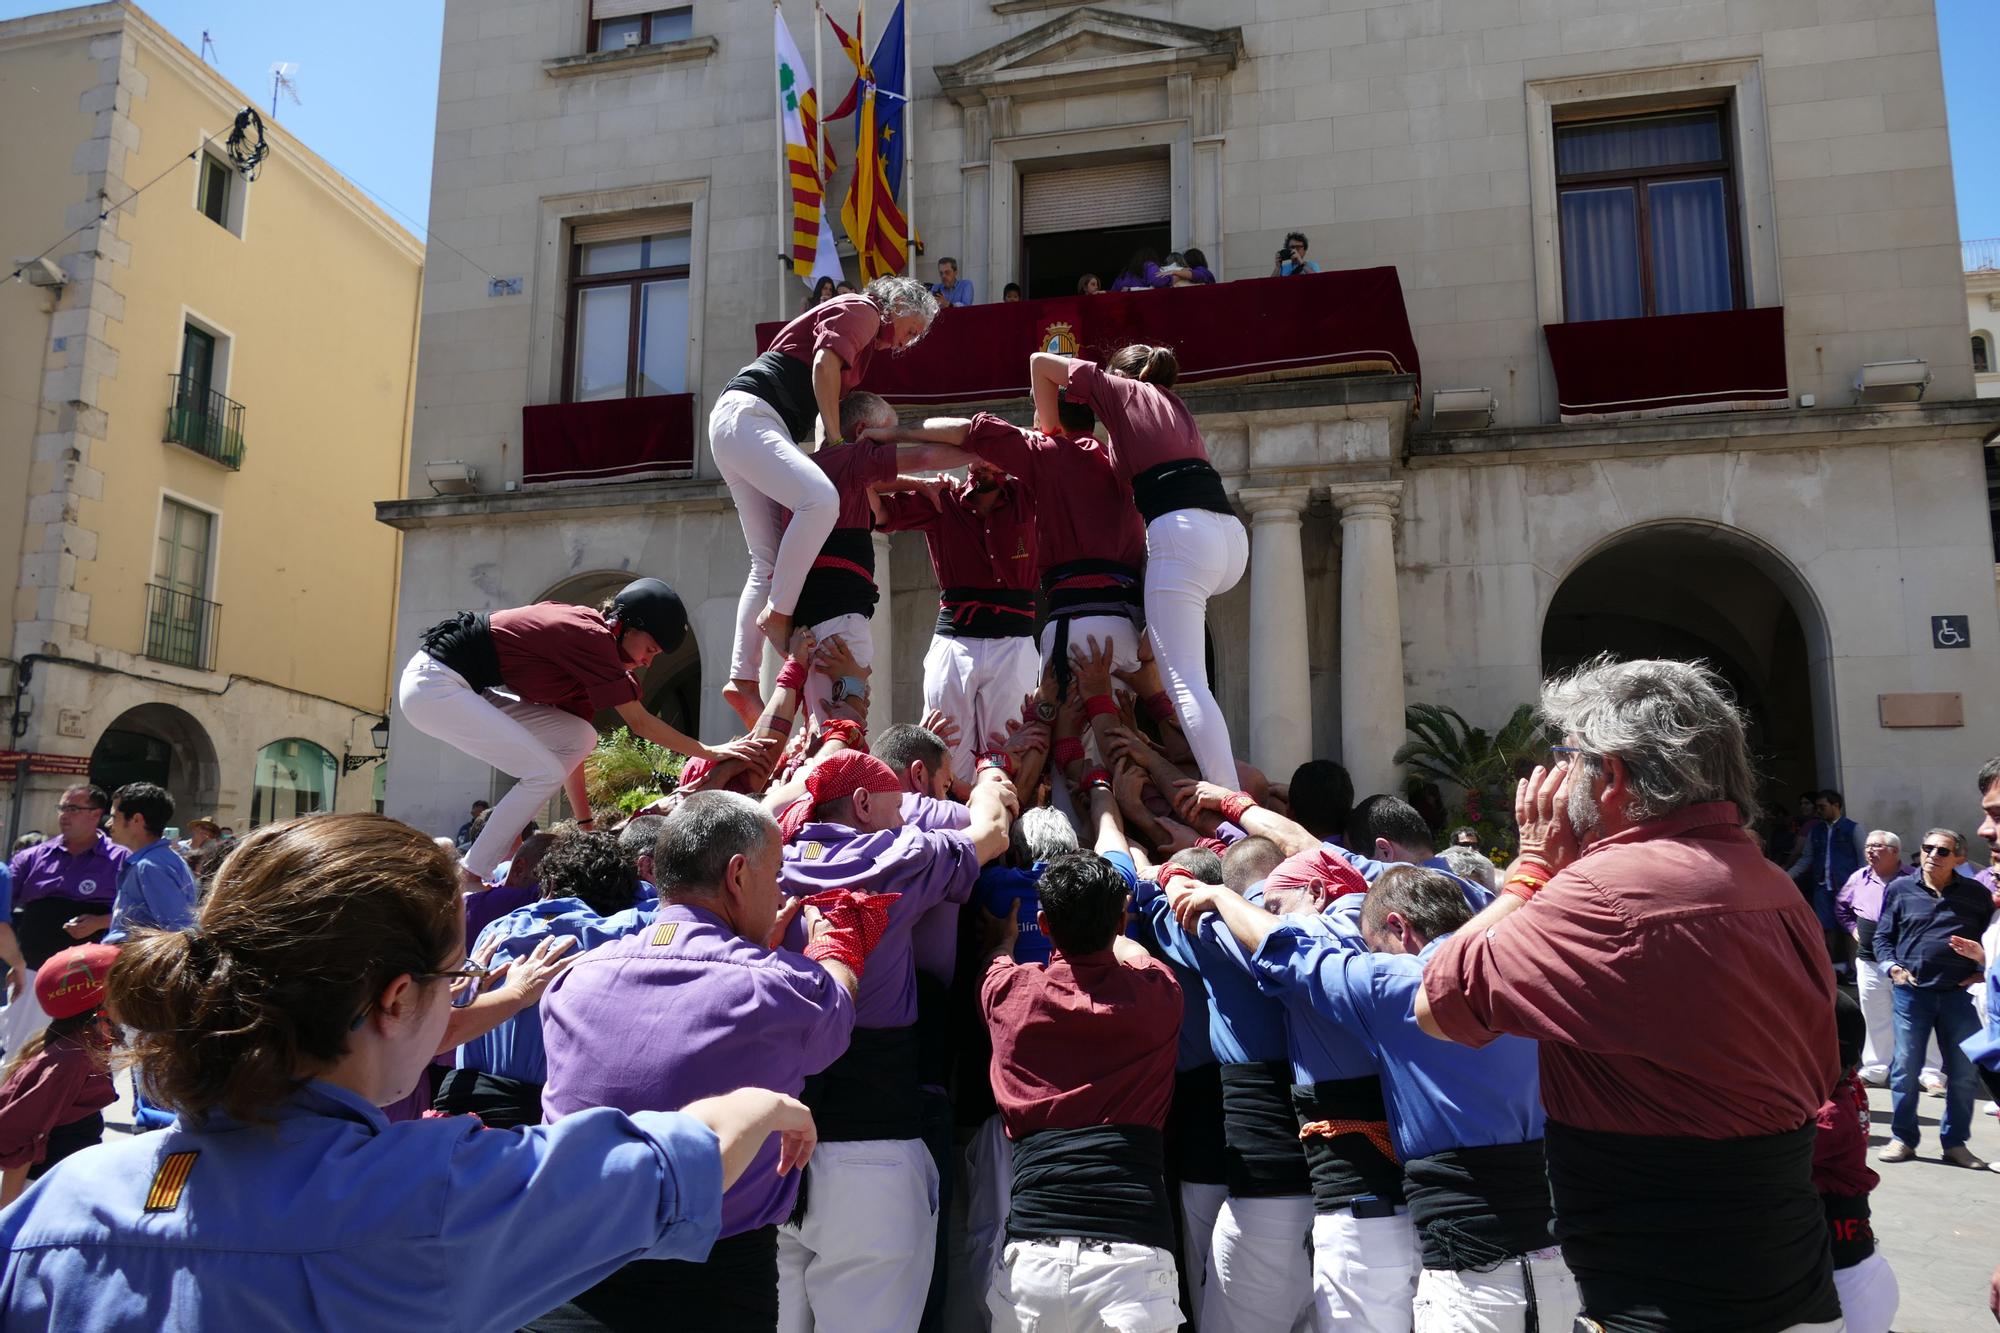 La plaça es tenyeix de colors amb la Diada Castellera de Santa Creu